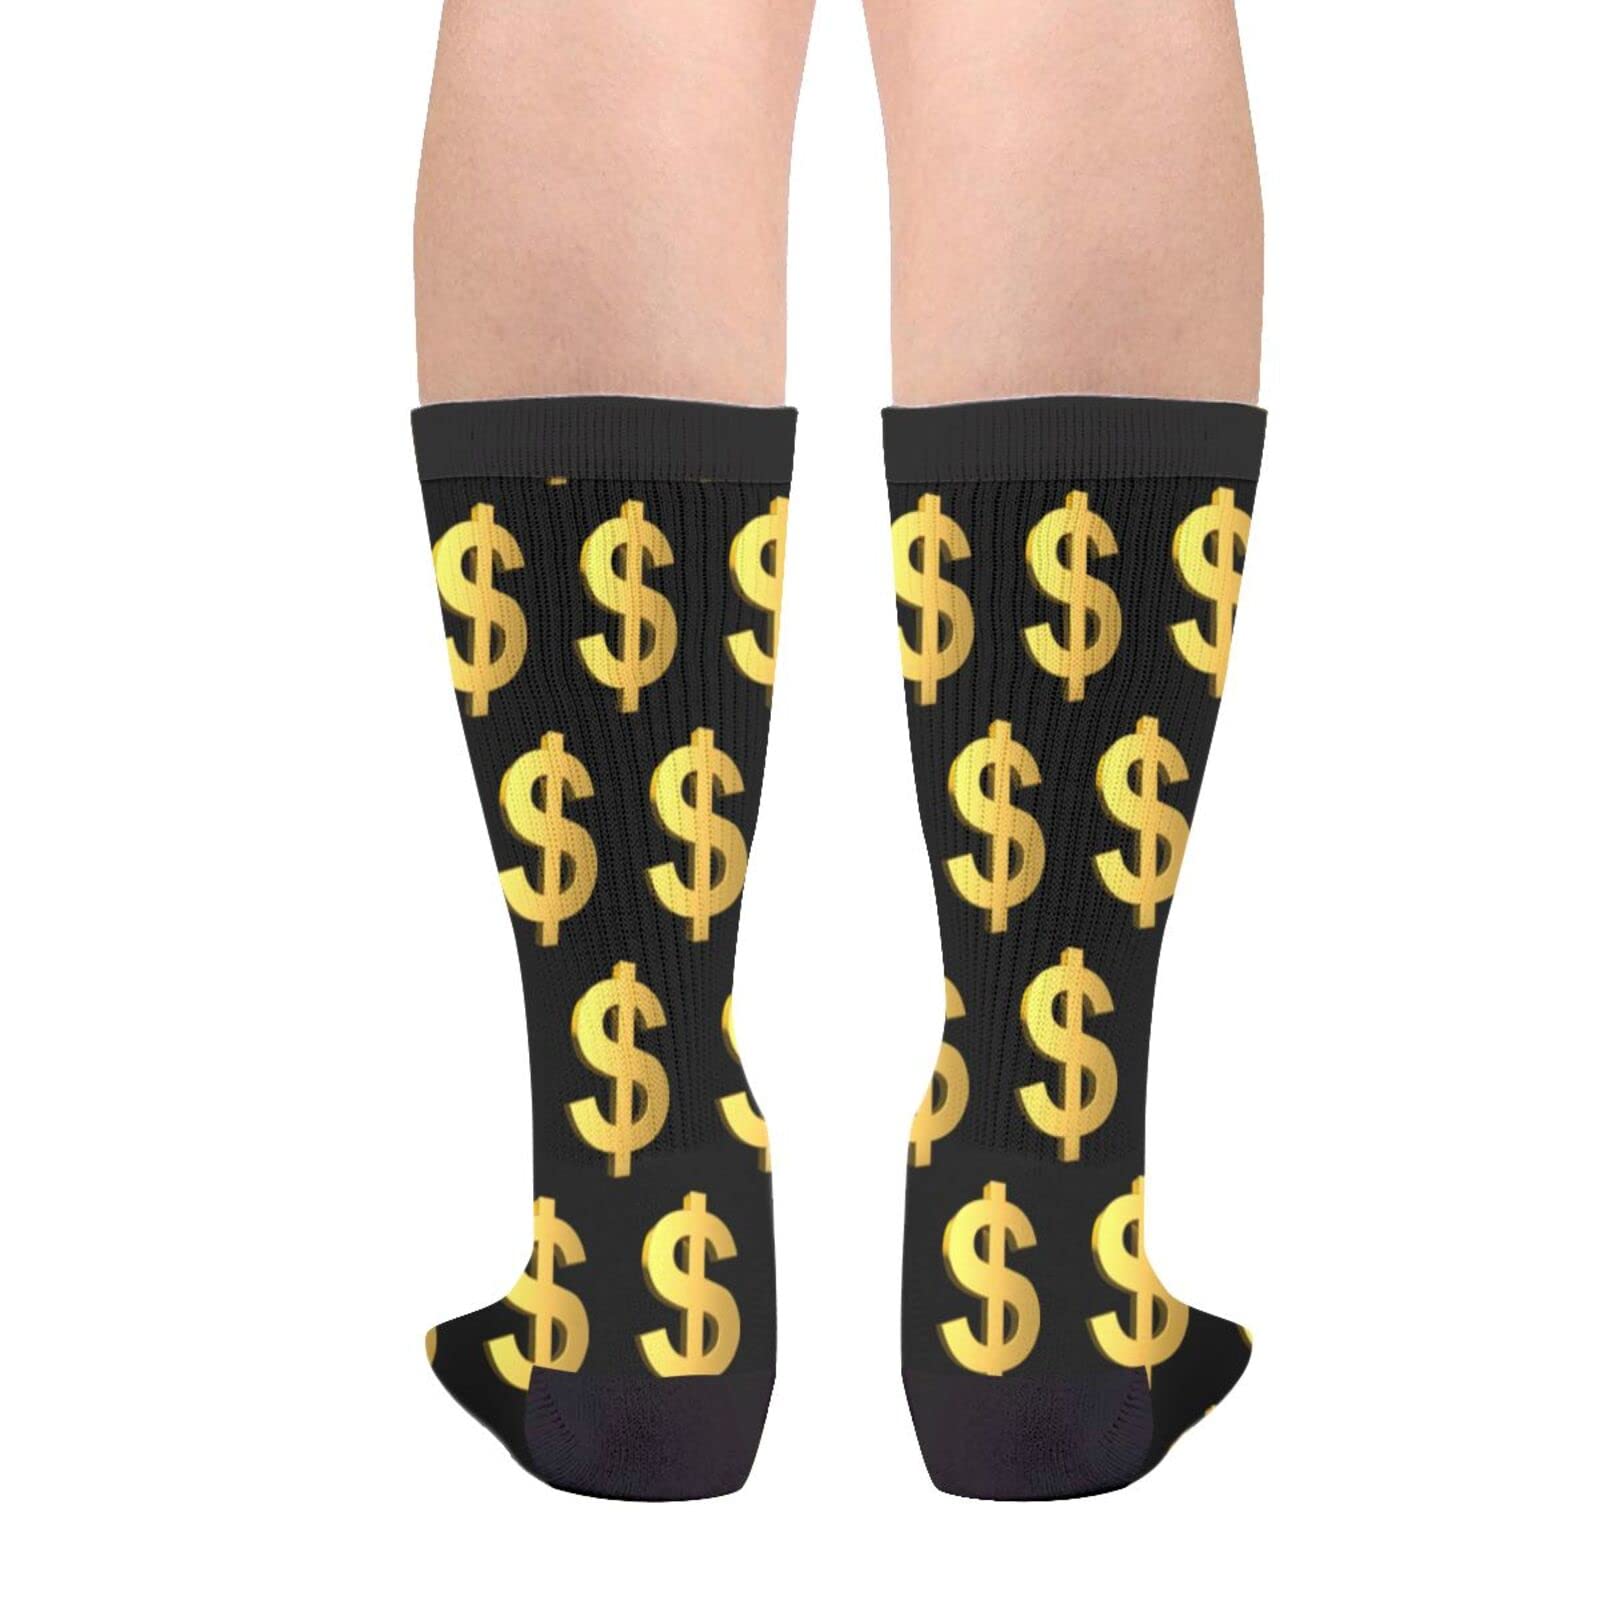 Cool Socks For Men Women Fun Novelty Crew Socks